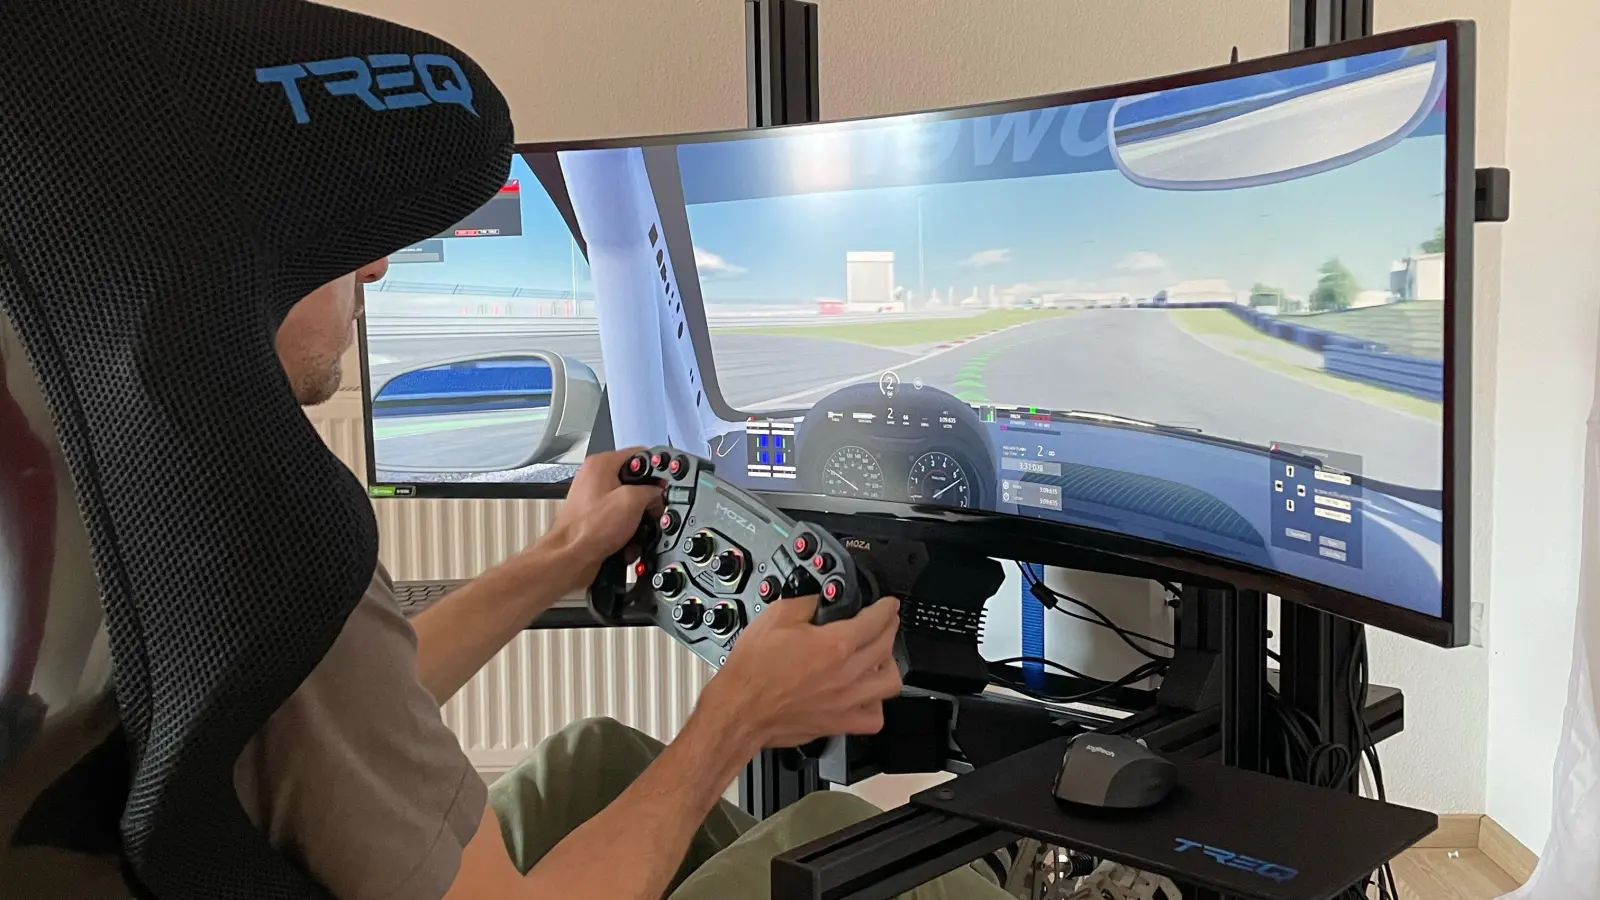 Der Sportleiter des Motorsportclubs Schillingsfürst, Andreas Dworatzek, testet den neuen Motorsport-Simulator. Dies ist laut dem MSC eine gute Möglichkeit, neue Mitglieder anzuwerben. (Foto: Cedric Sterner)